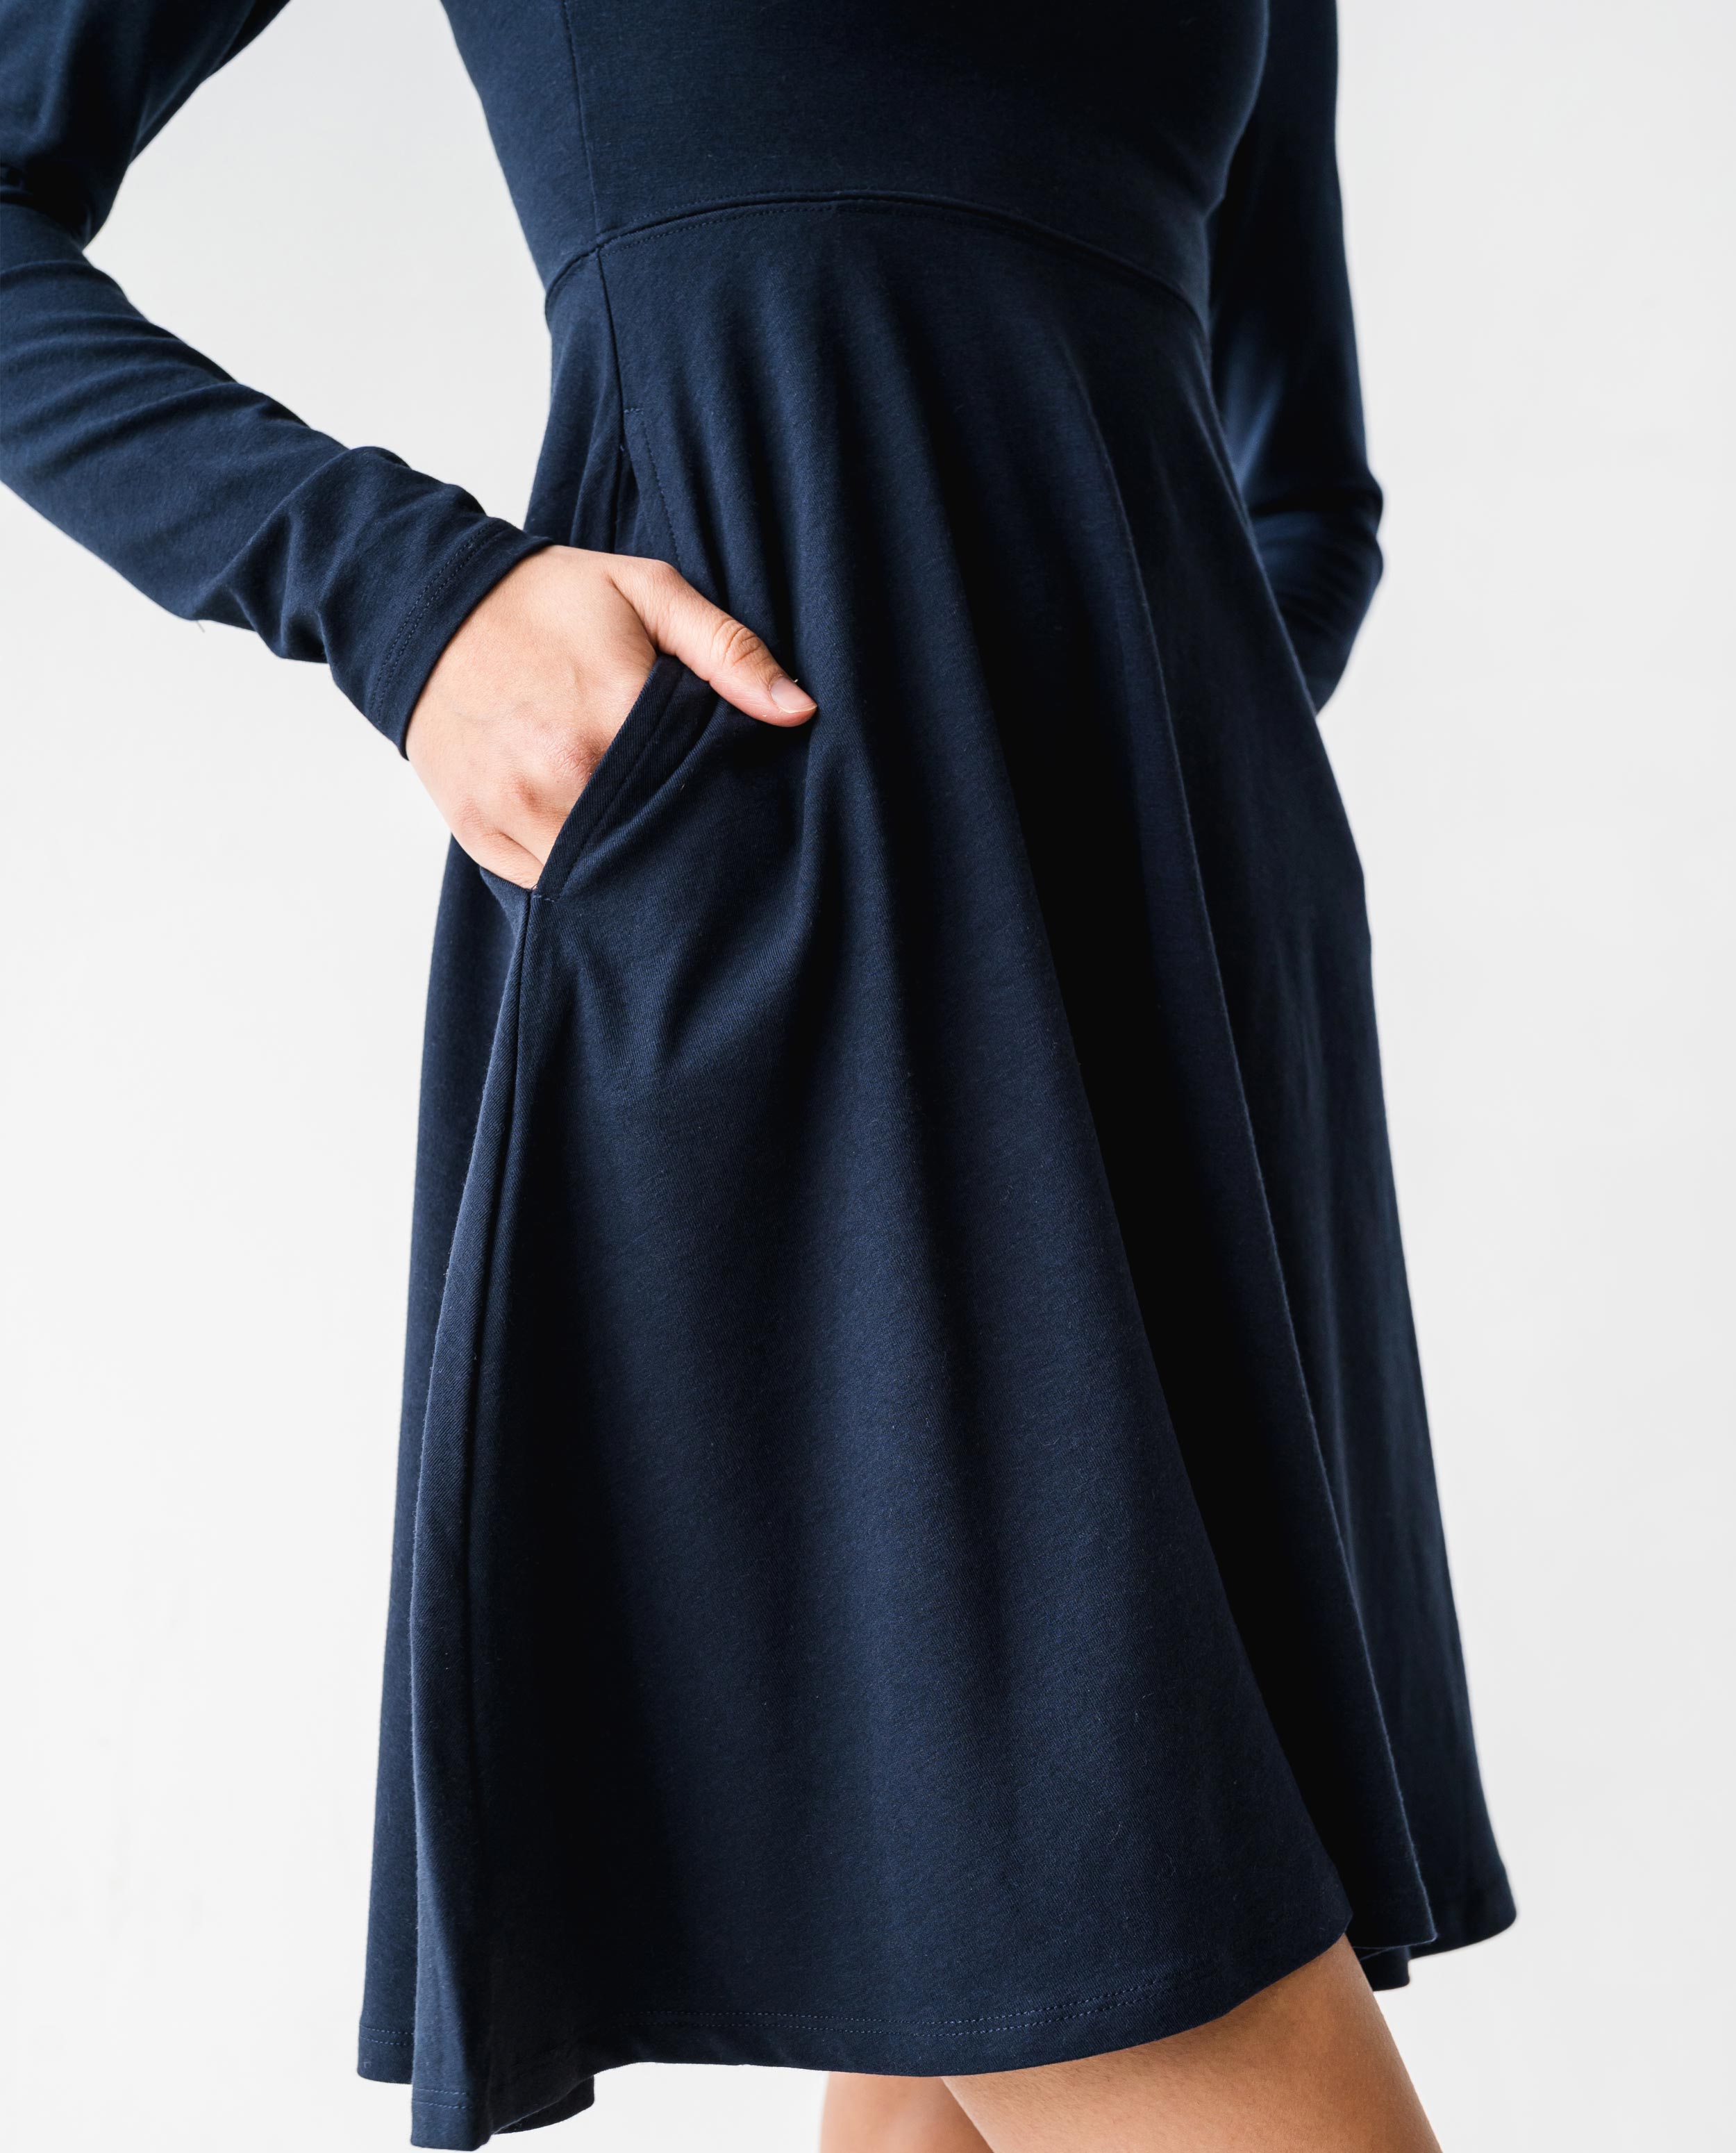 The Long Sleeve Squareneck Dress | FRANC Sustainable Clothing